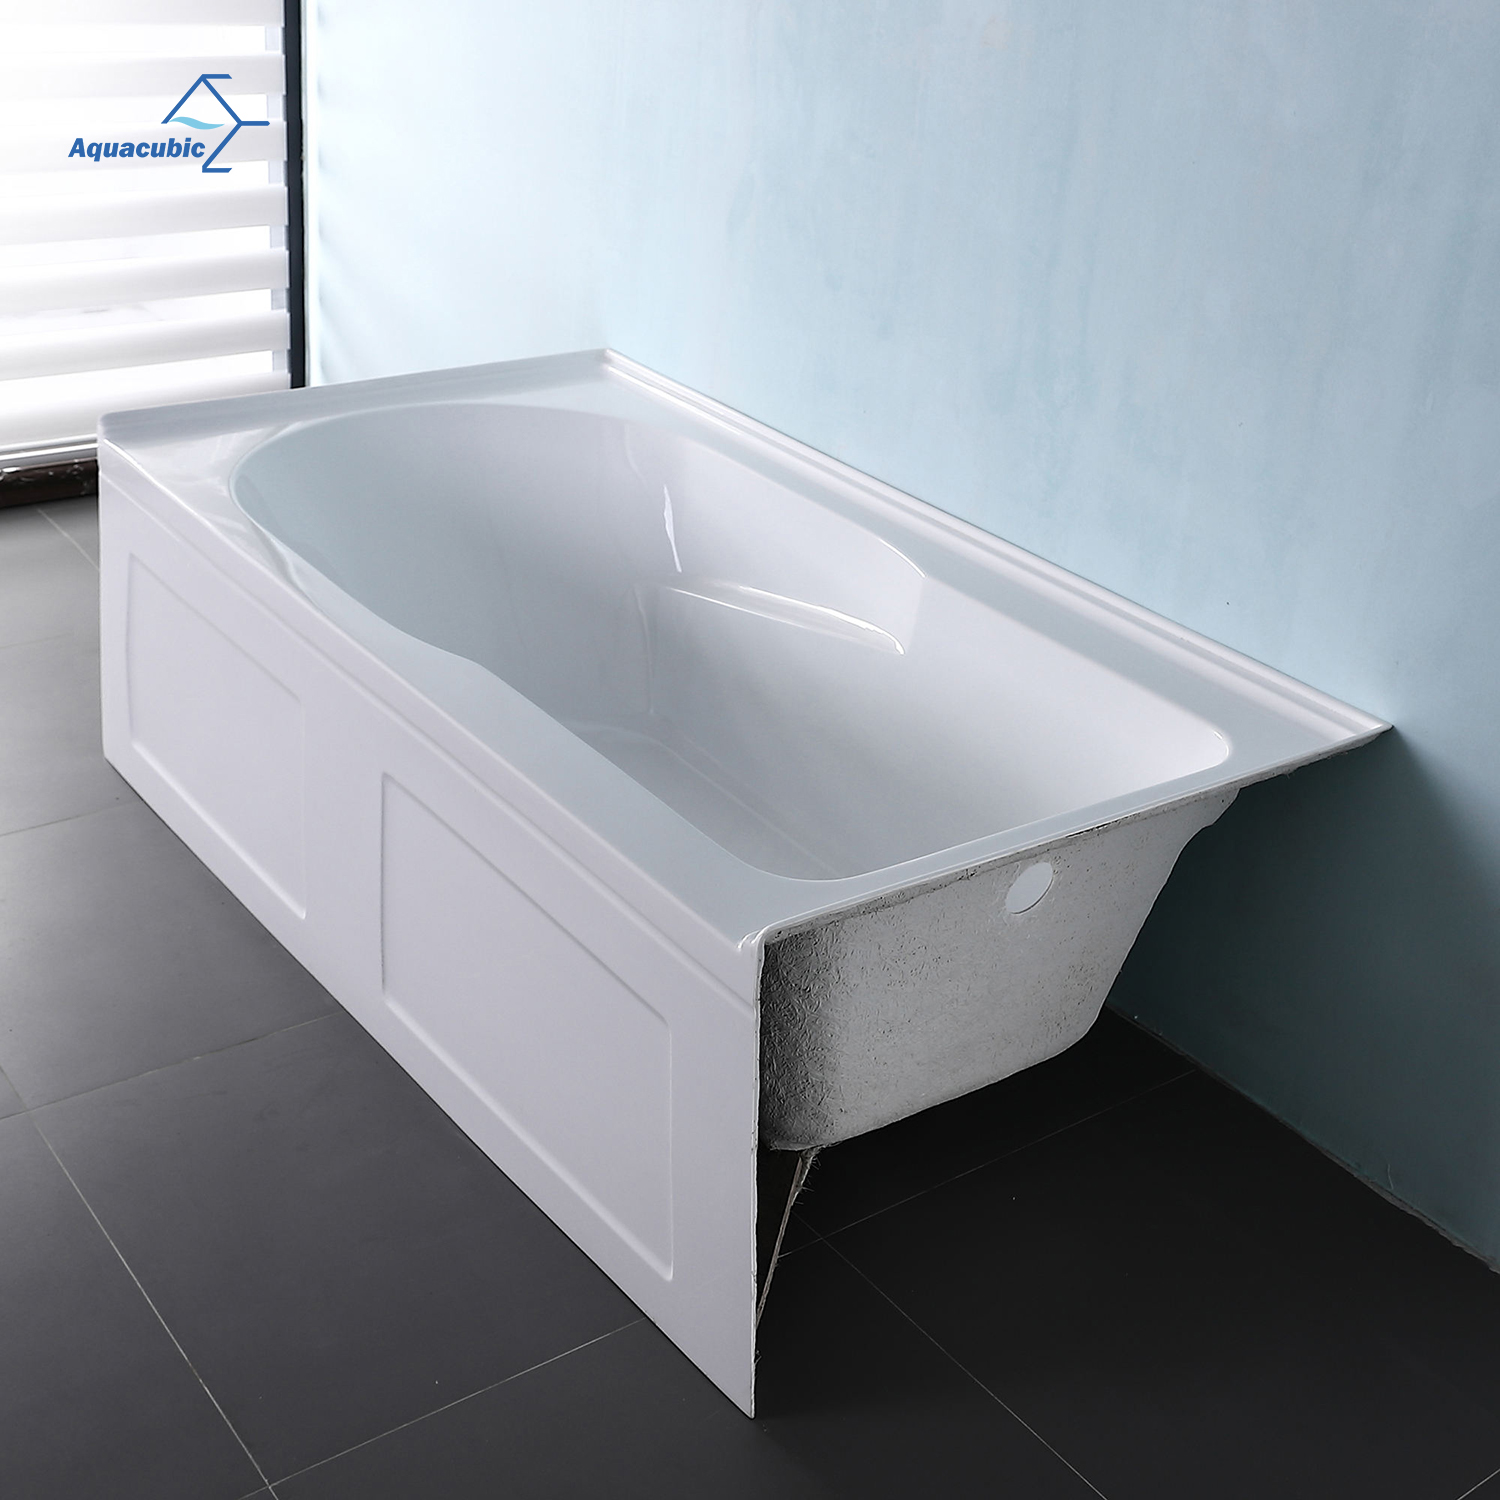 Einbau-Badewanne mit integrierter Schürze, einteilige, weiße, rechteckige Nischenbadewanne aus Acryl für Projekte